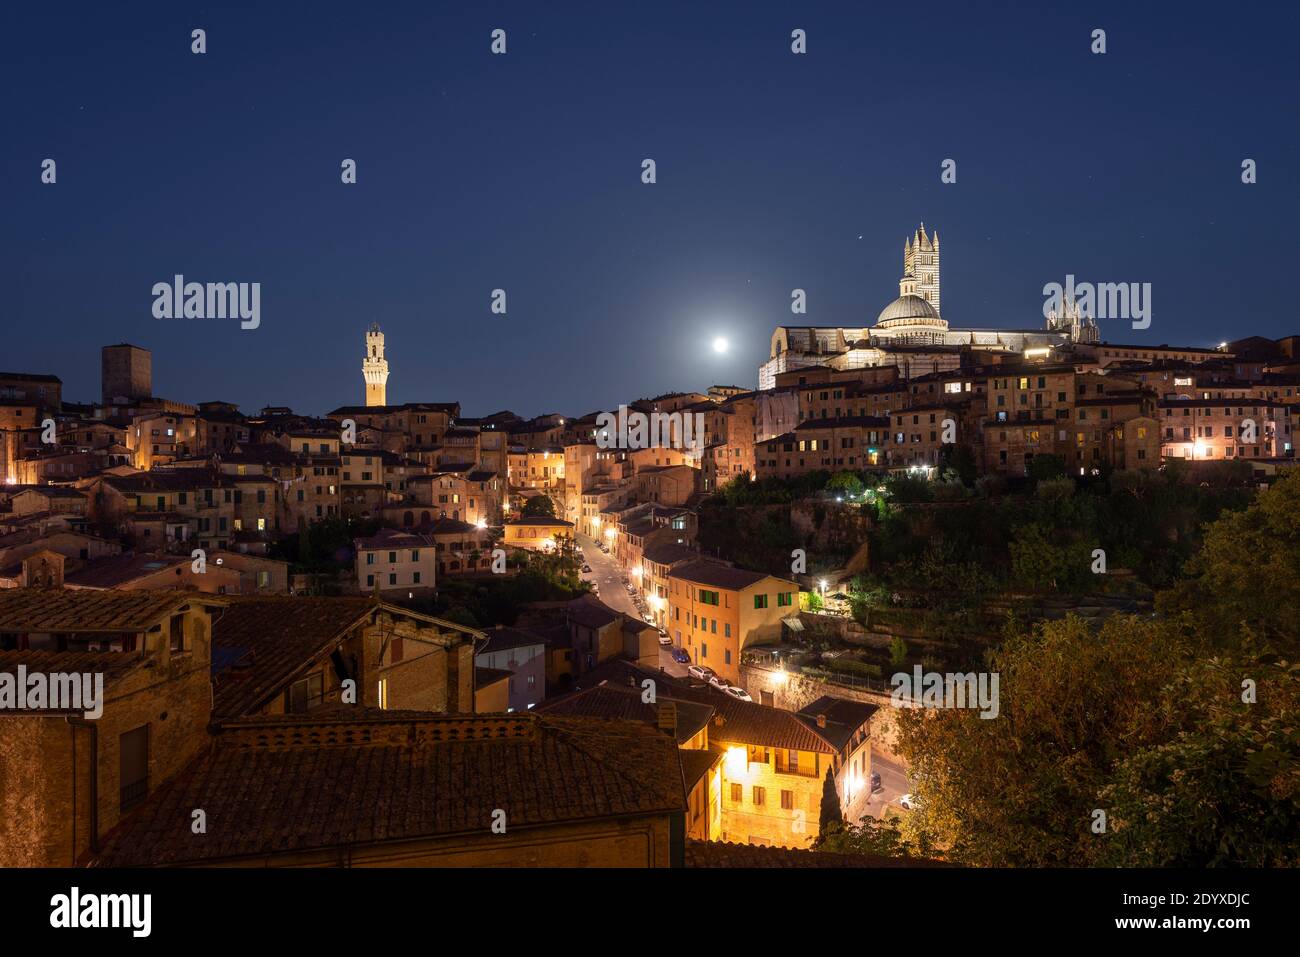 Vollmond über einer beleuchteten Gasse und das Panorama der mittelalterlichen Altstadt von Siena mit der Kathedrale, Rathaus Uhrenturm, Toskana, Italien Stockfoto